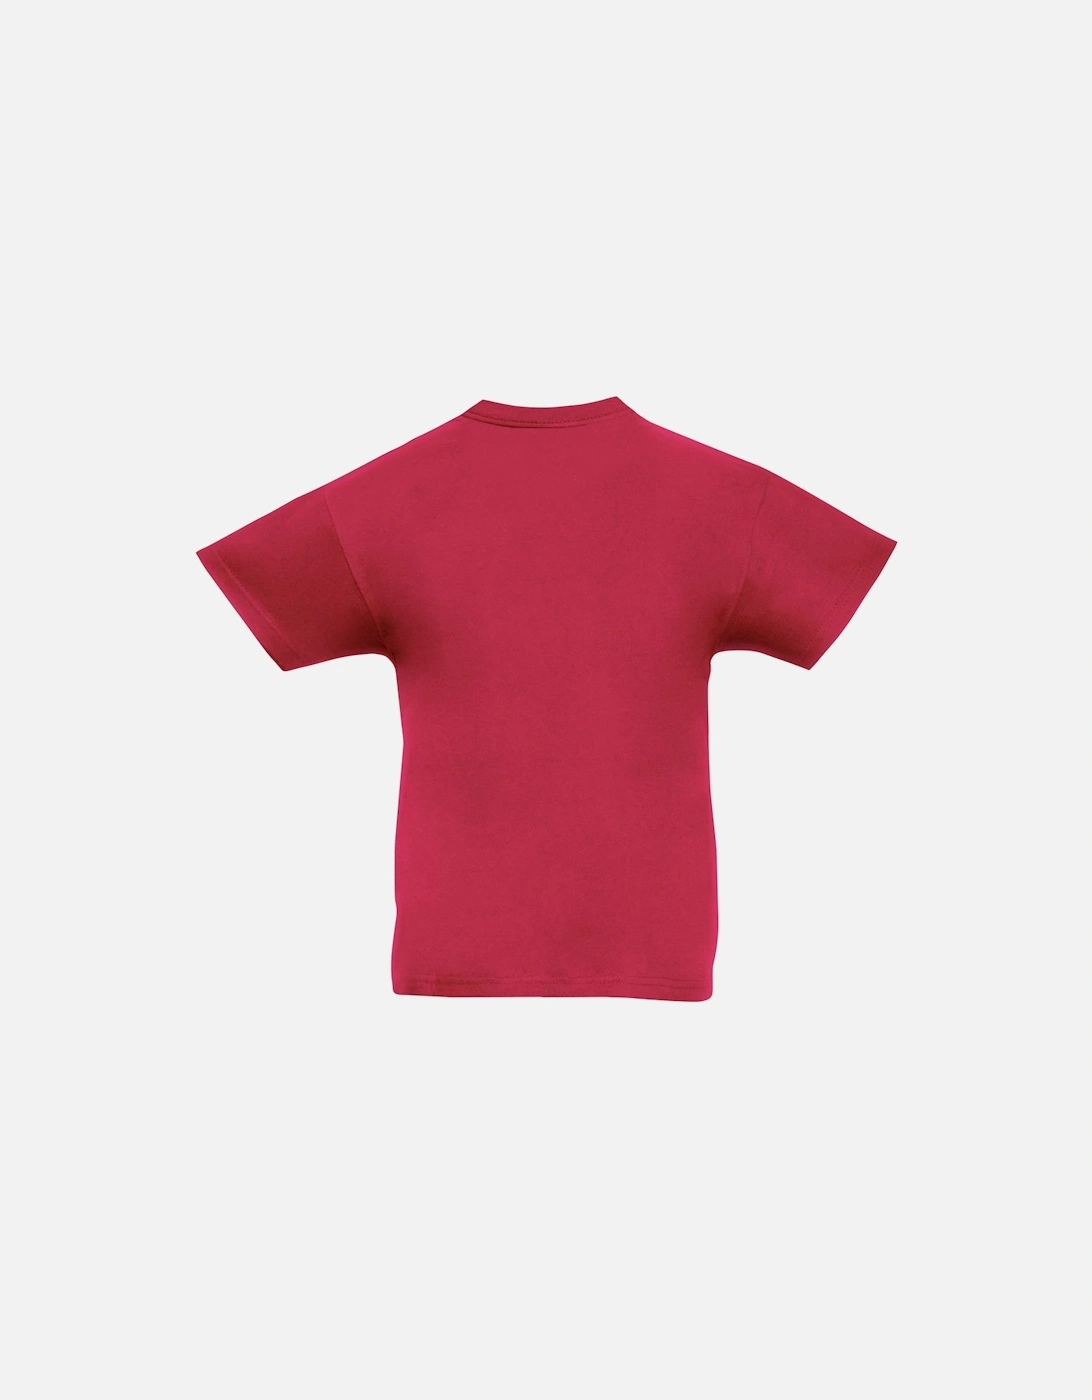 Childrens/Teens Original Short Sleeve T-Shirt